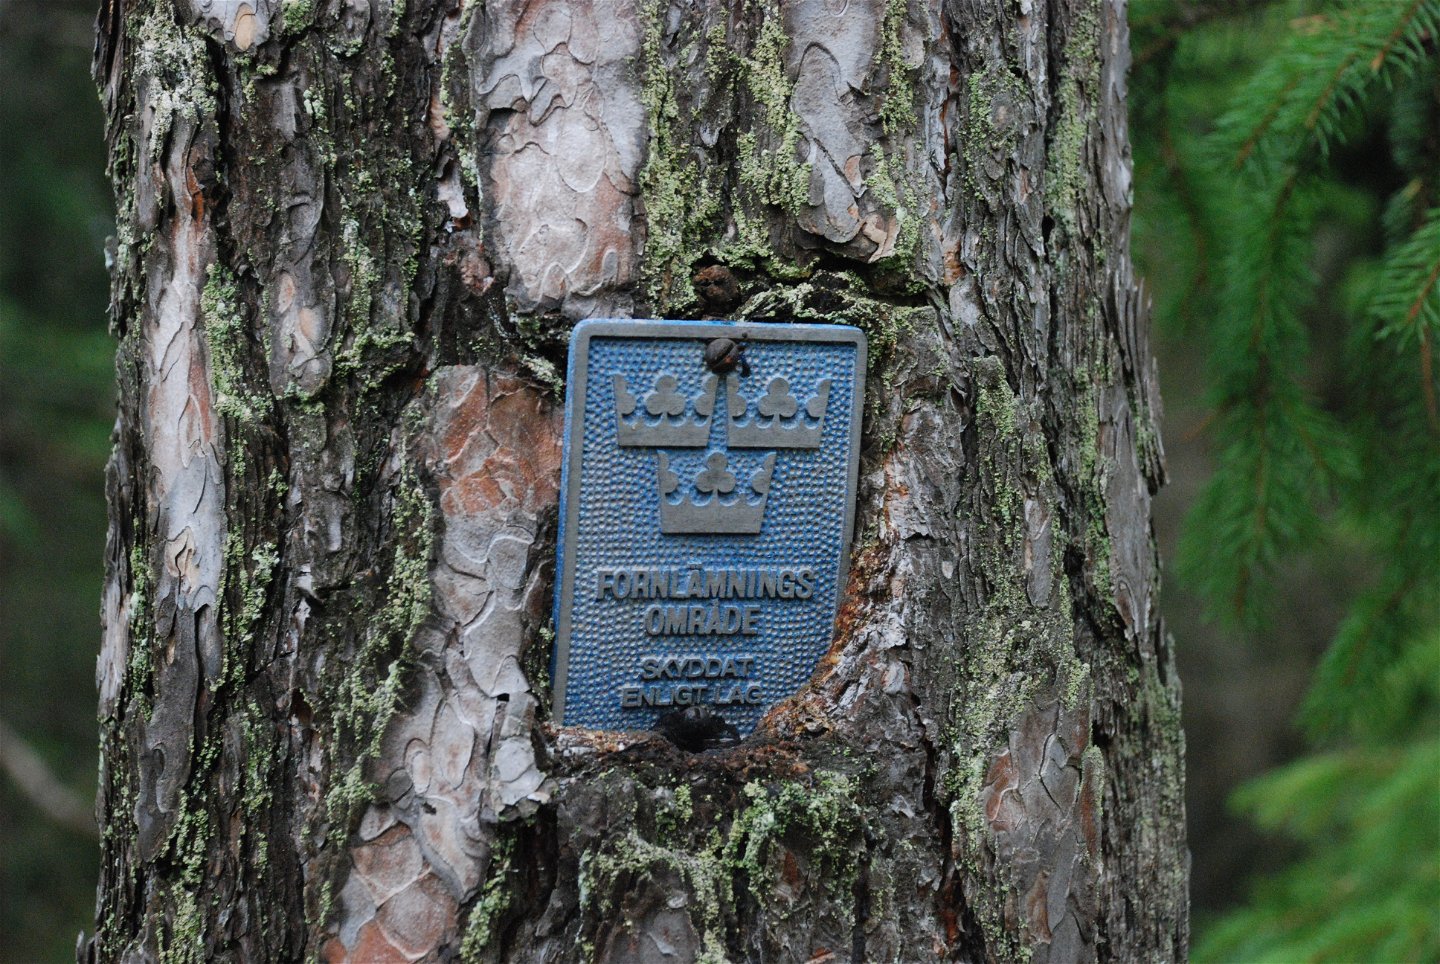 Närbild på en metallplatta fastsatt på en trädstam.